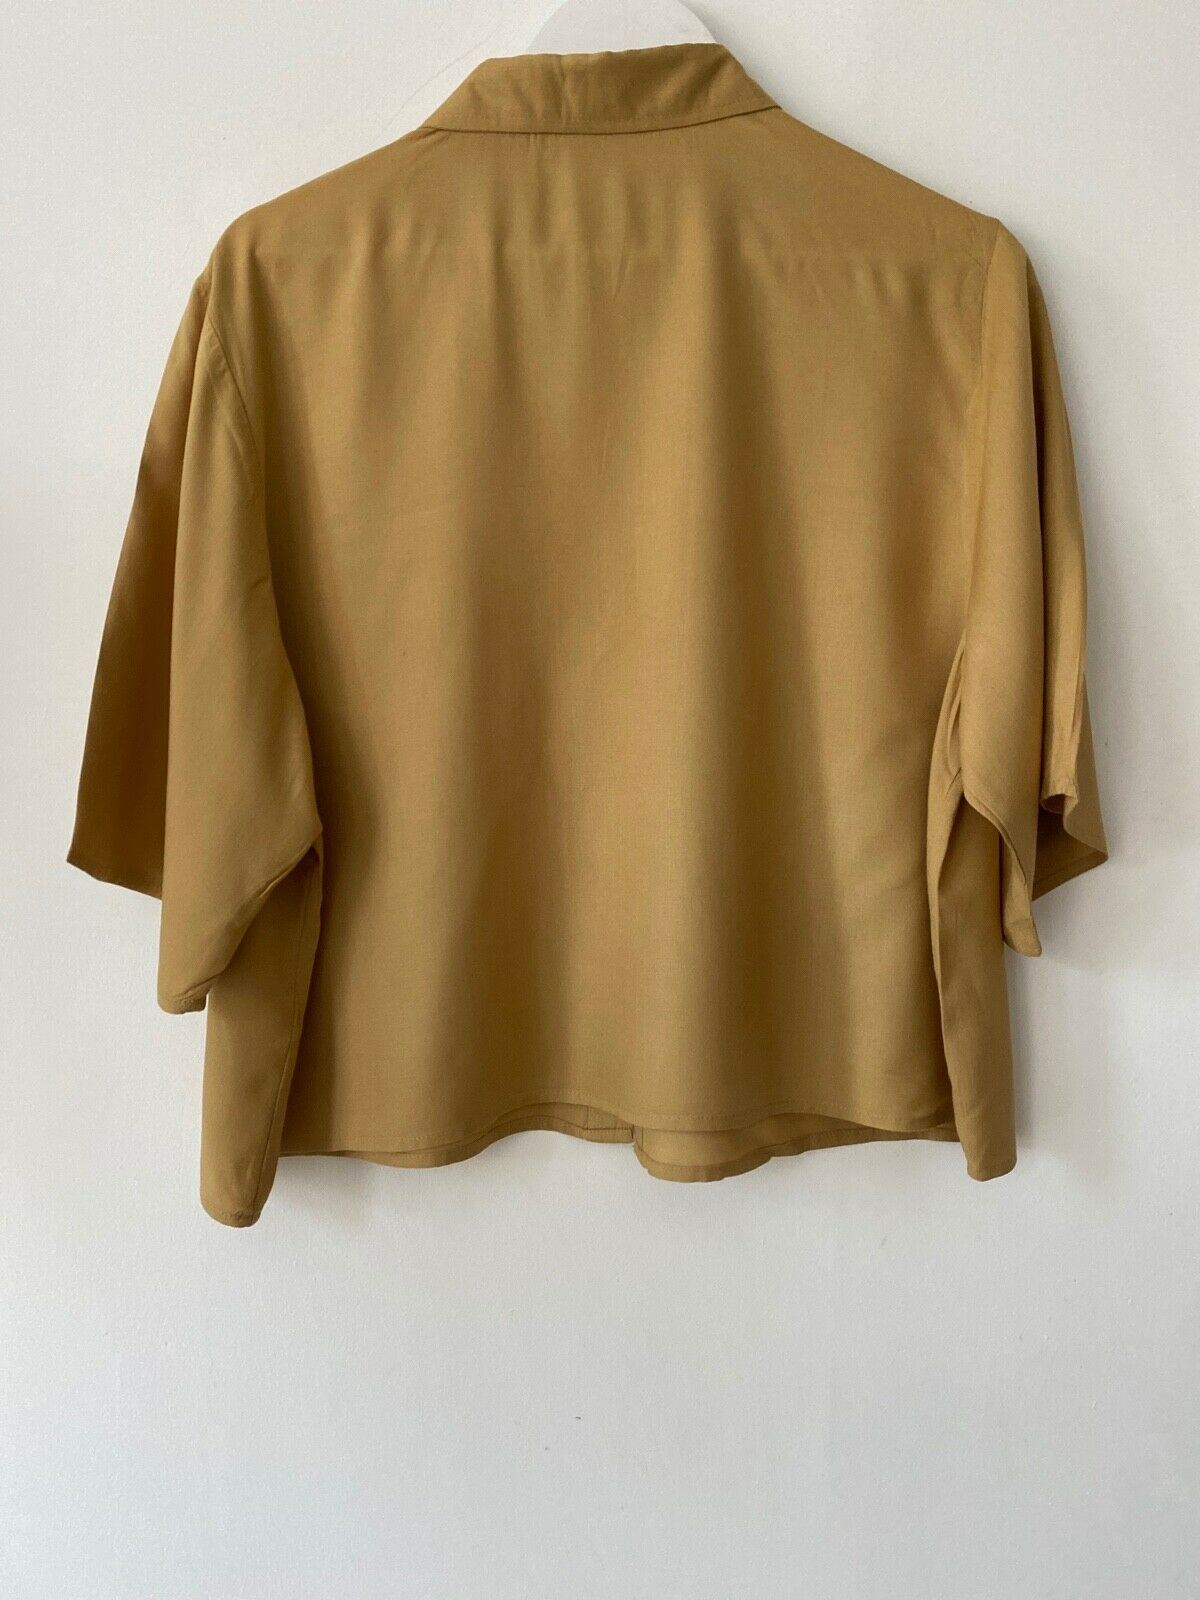 Studio Box Short Shirt Camel Size 16 / 18